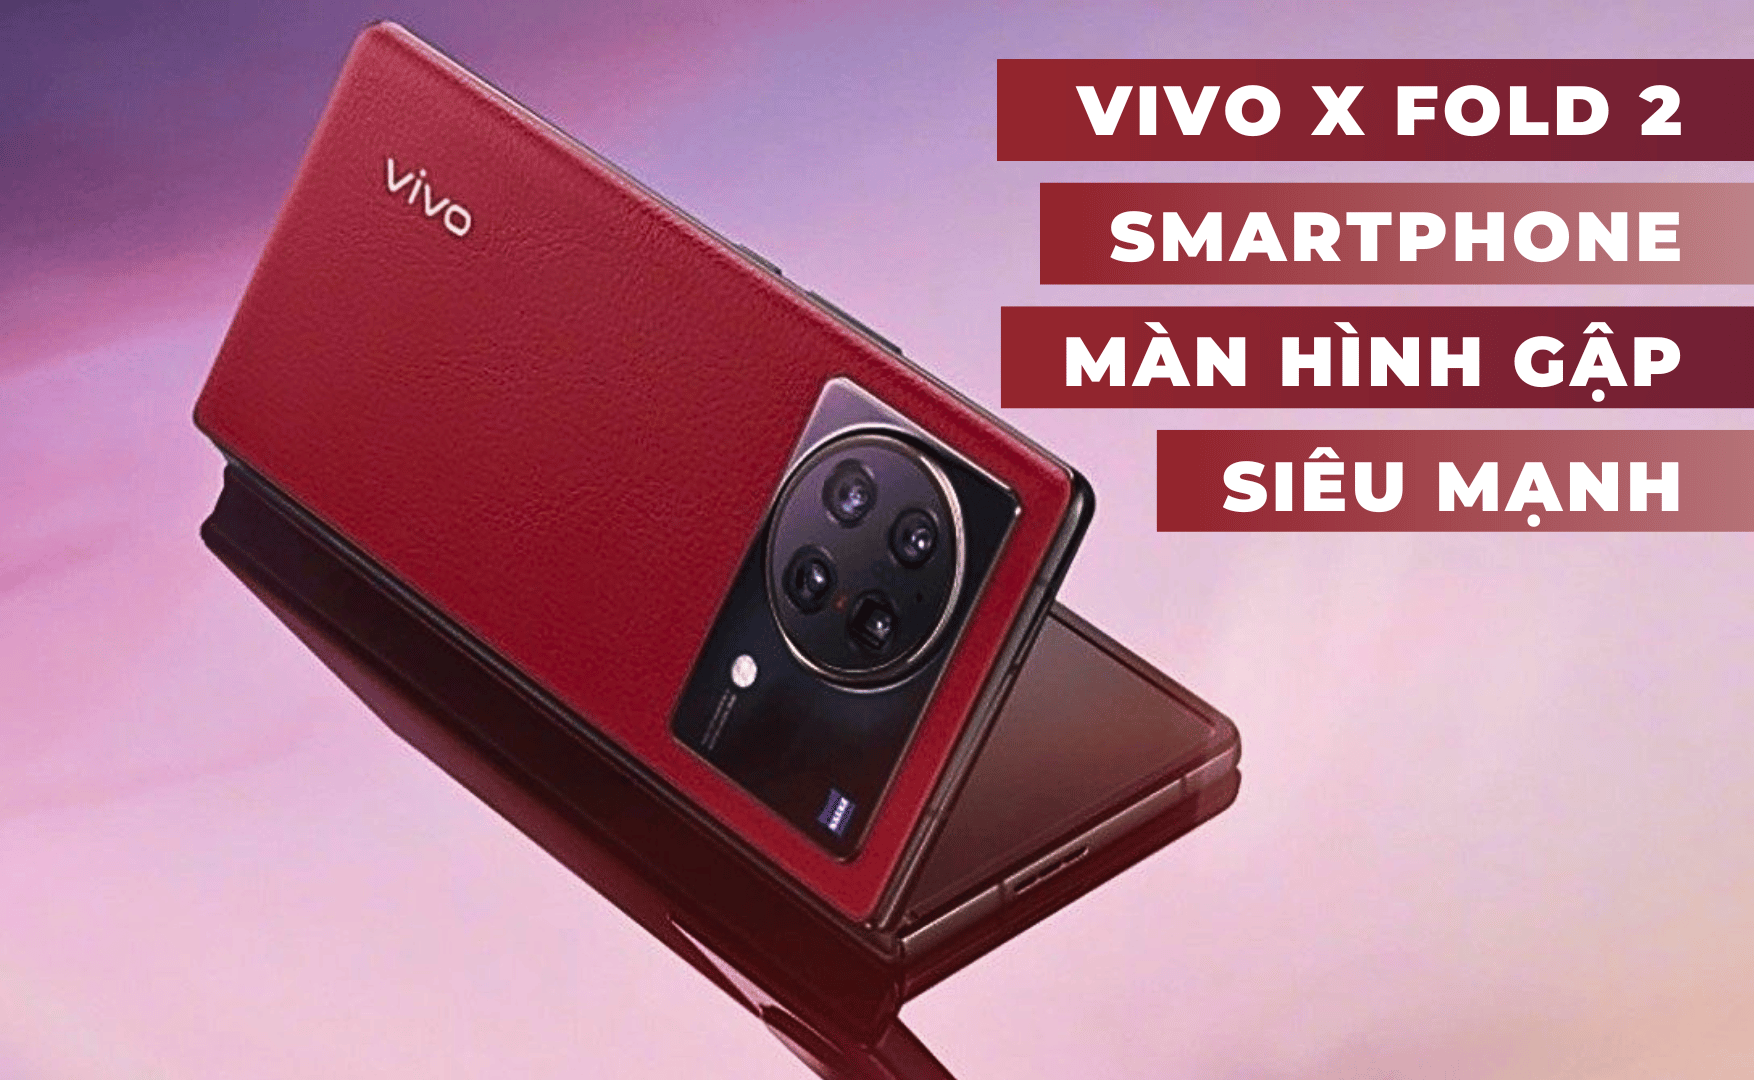 Cấu hình Vivo X Fold 2 chi tiết smartphone màn hình gập mới